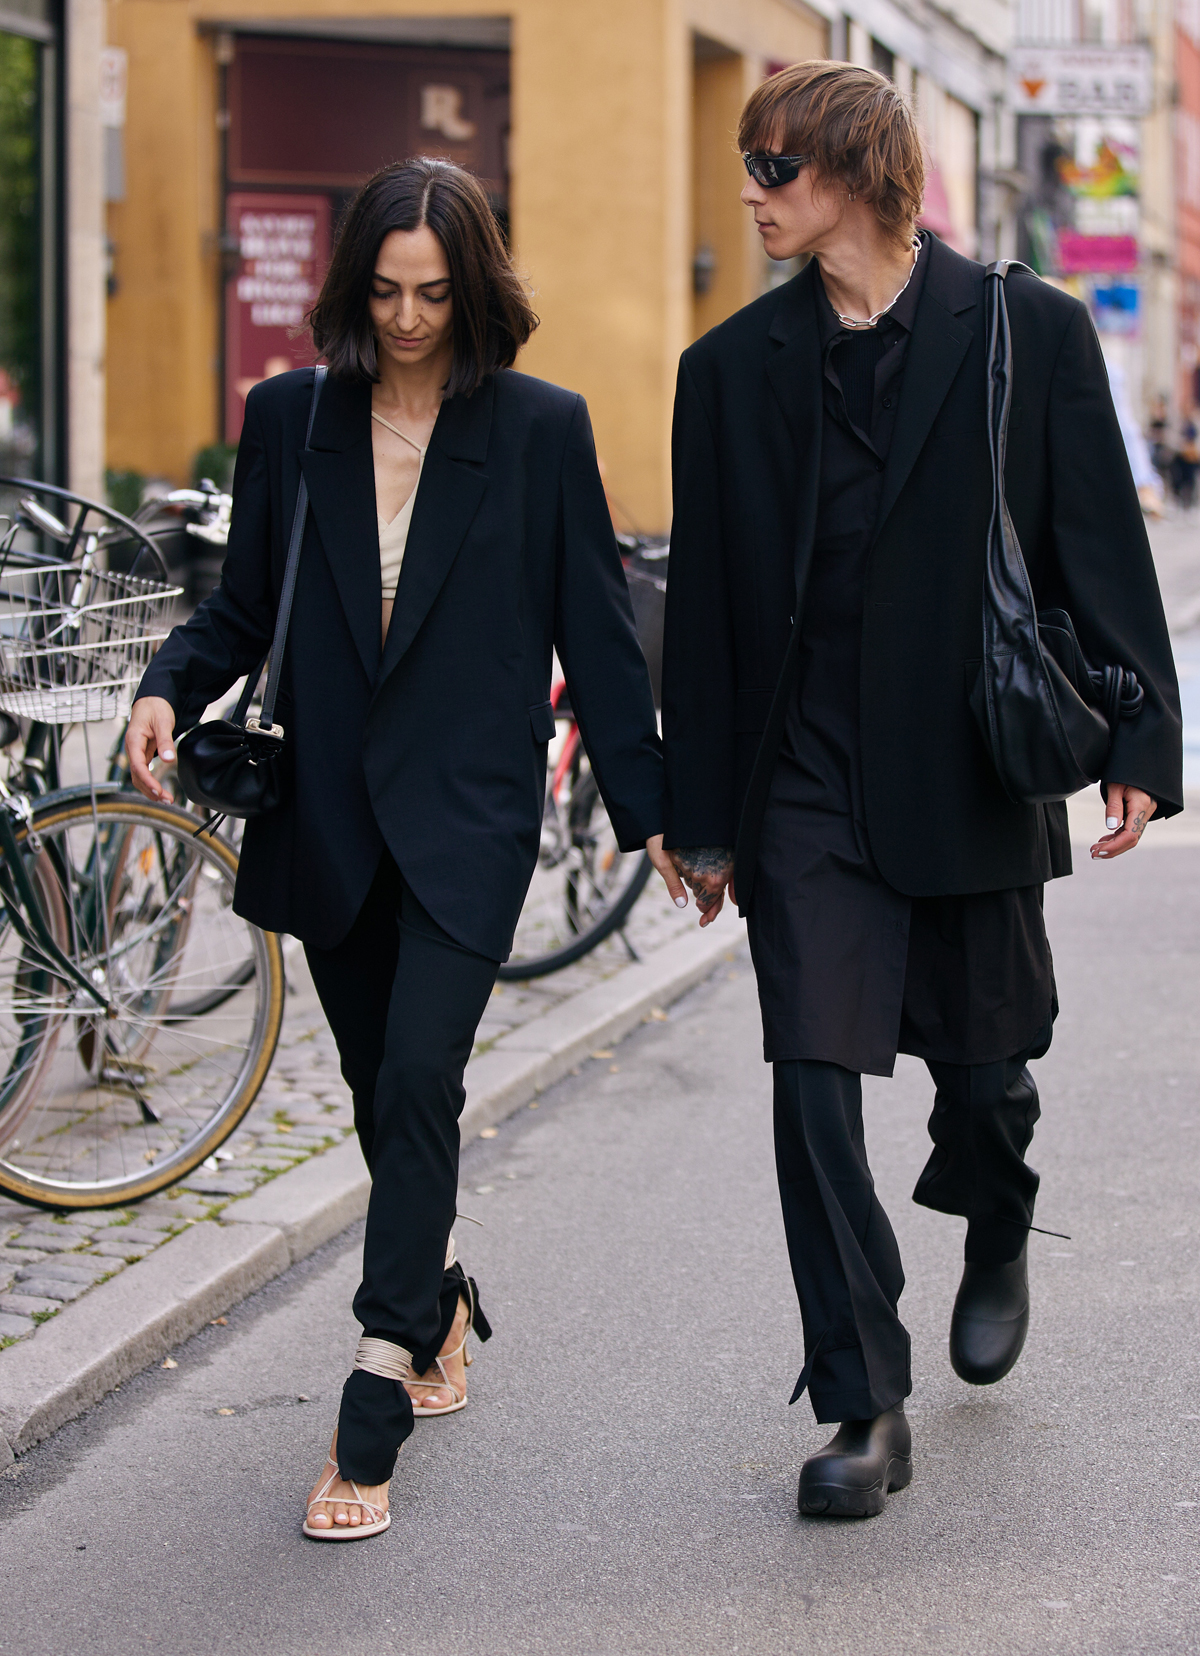 Copenhagen Fashion Week street style 2021: